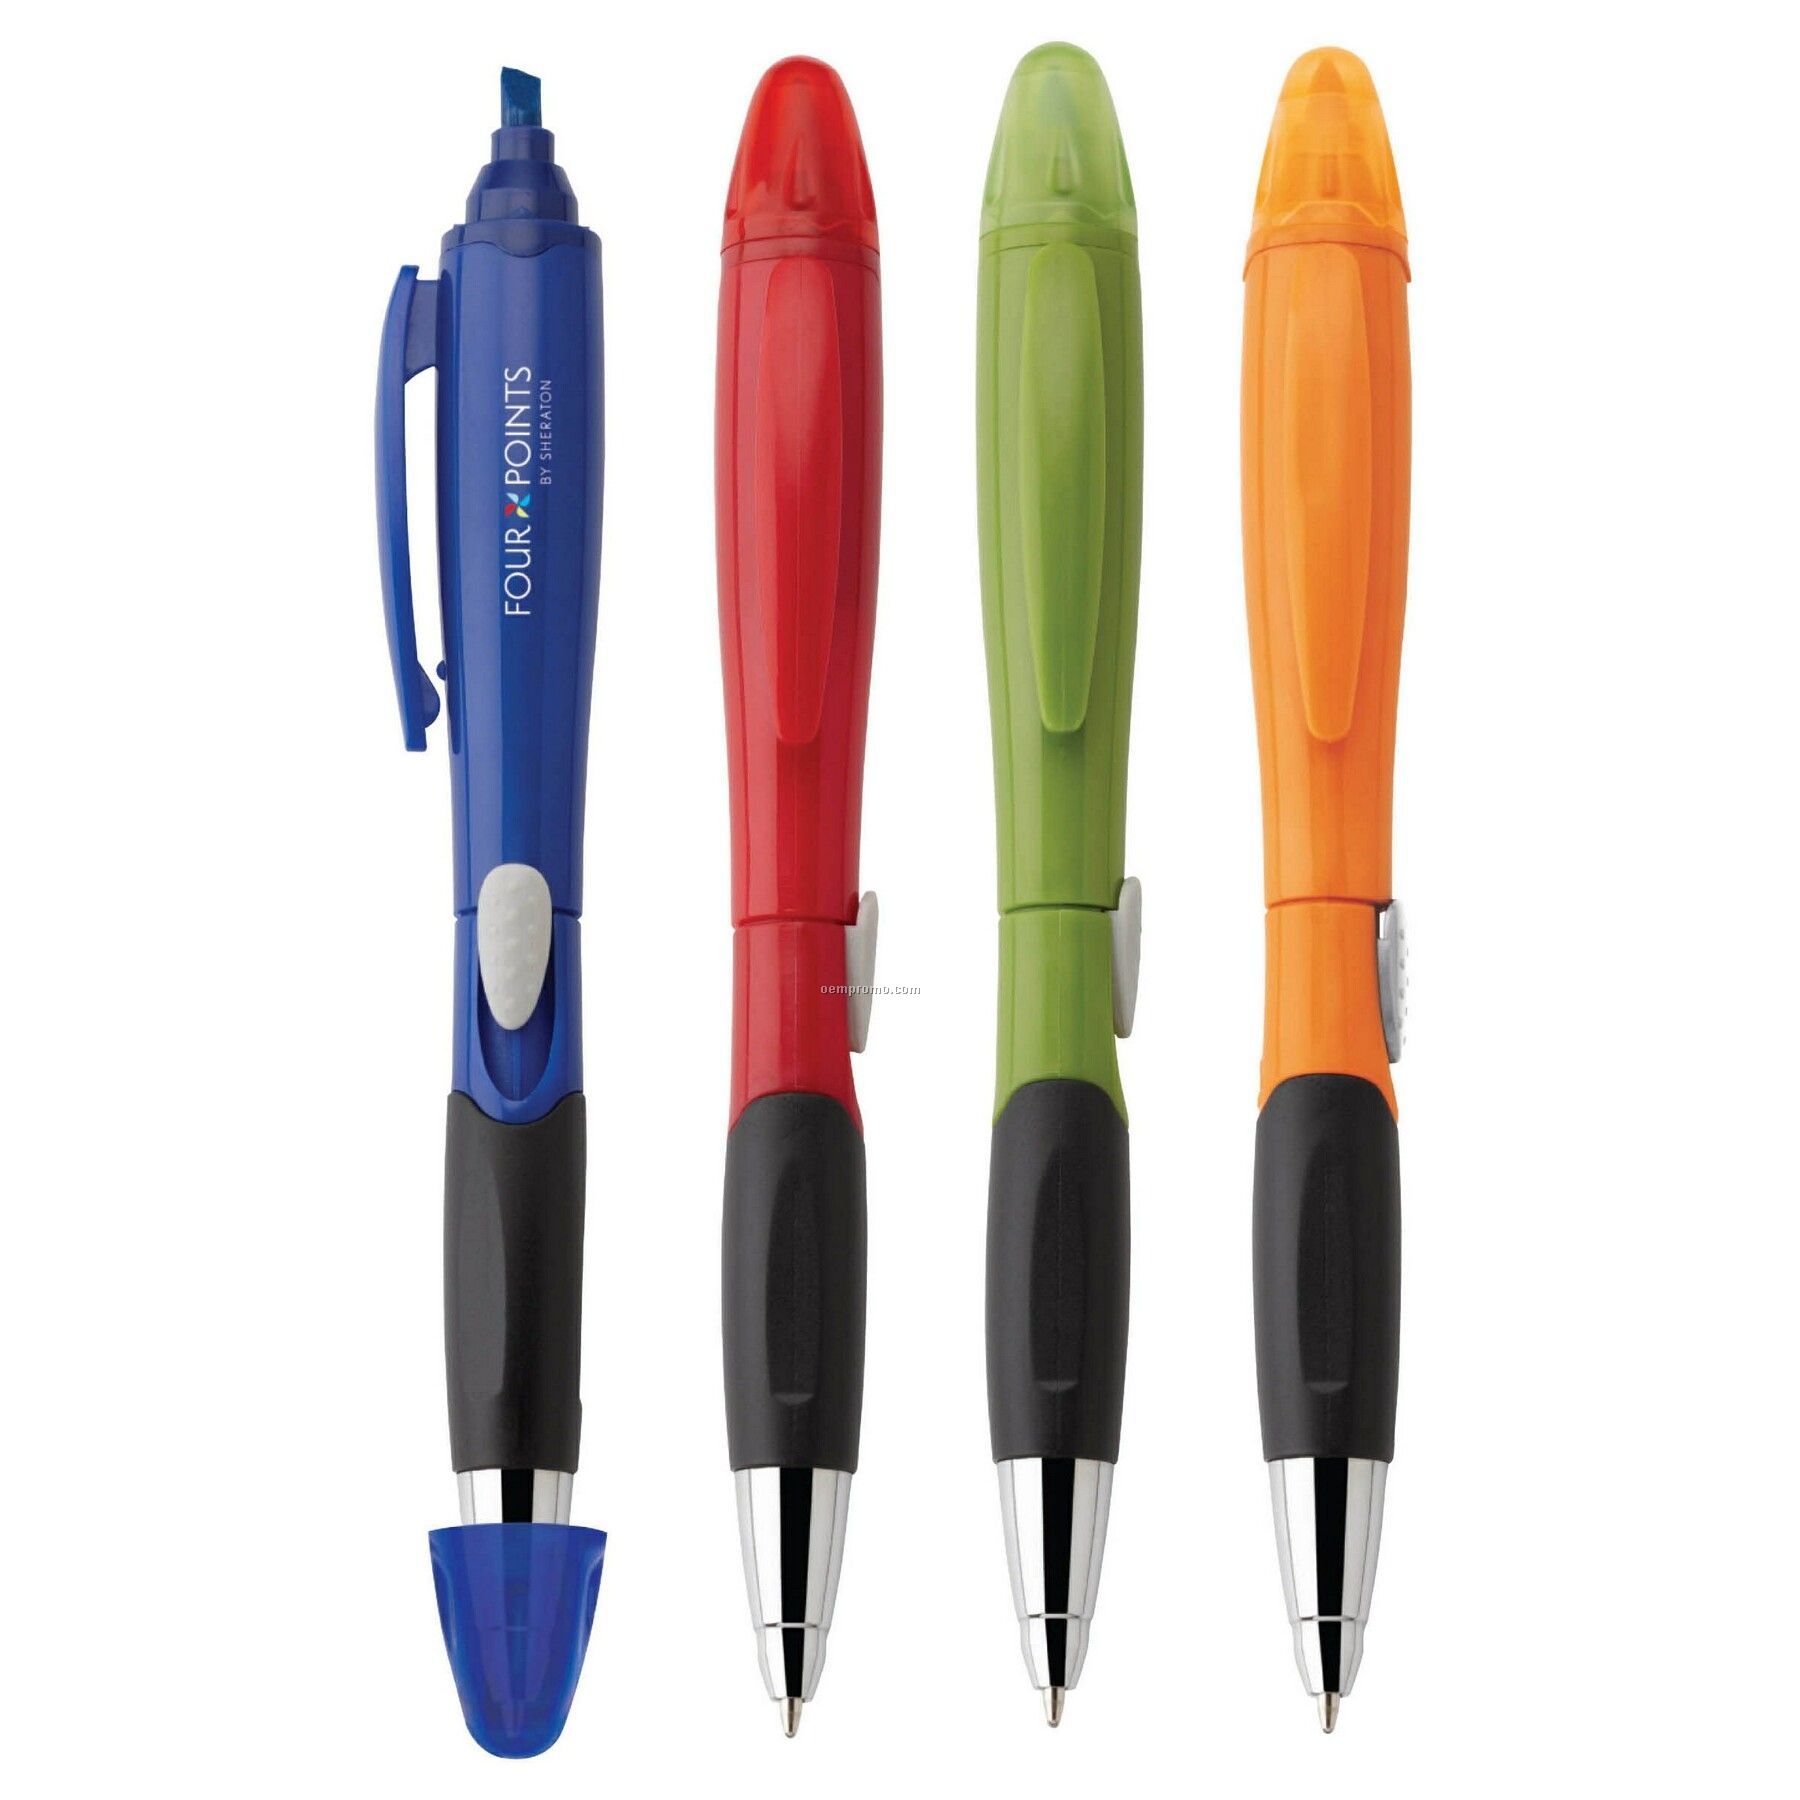 Blossom Ballpoint Plastic Pen/ Highlighter With Chrome Tip